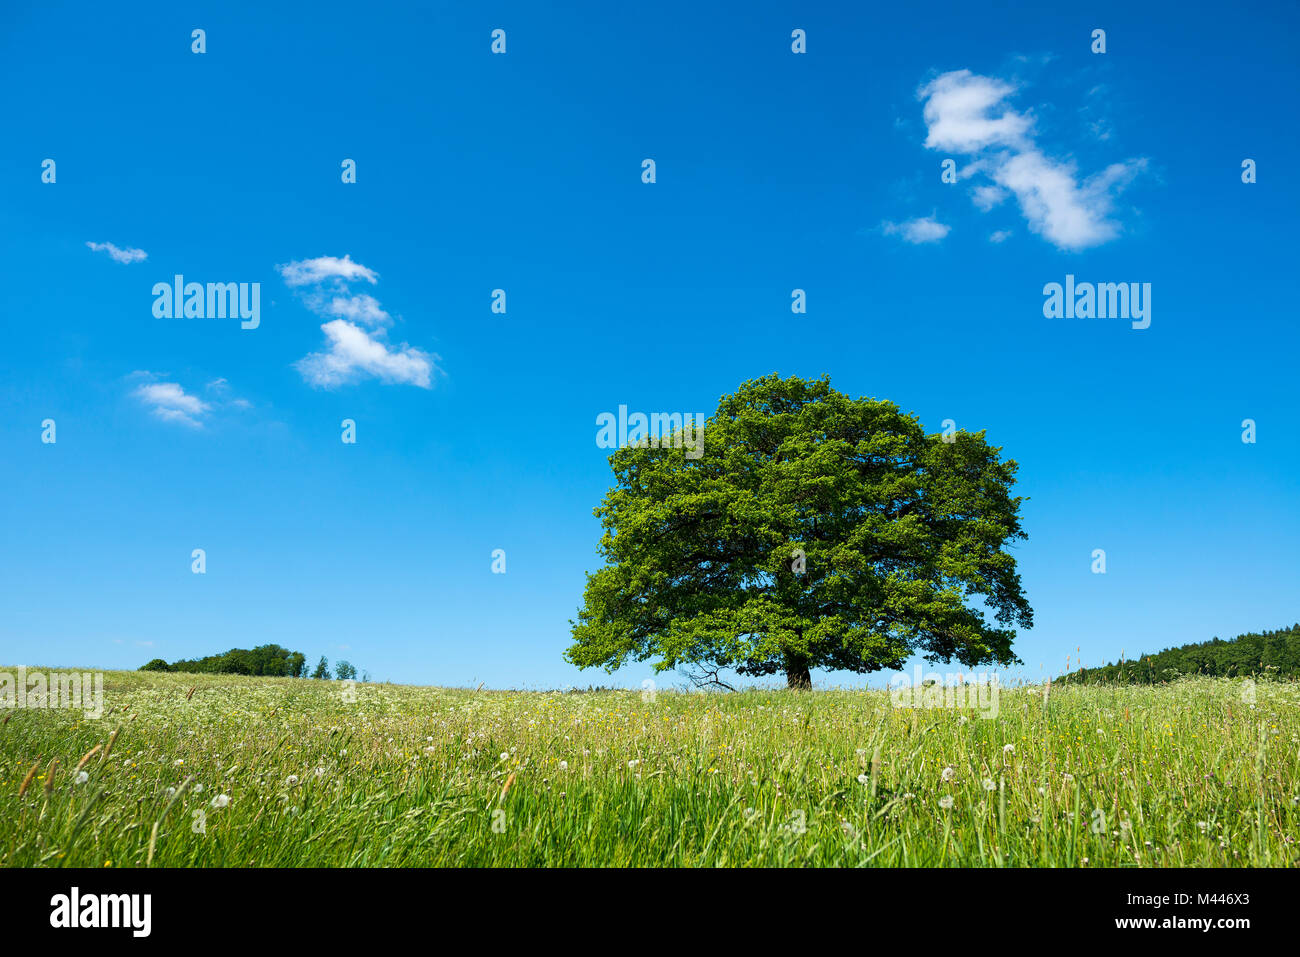 Vieux chêne pédonculé (Quercus robur) dans blooming meadow,arbre solitaire, Thuringe, Allemagne Banque D'Images